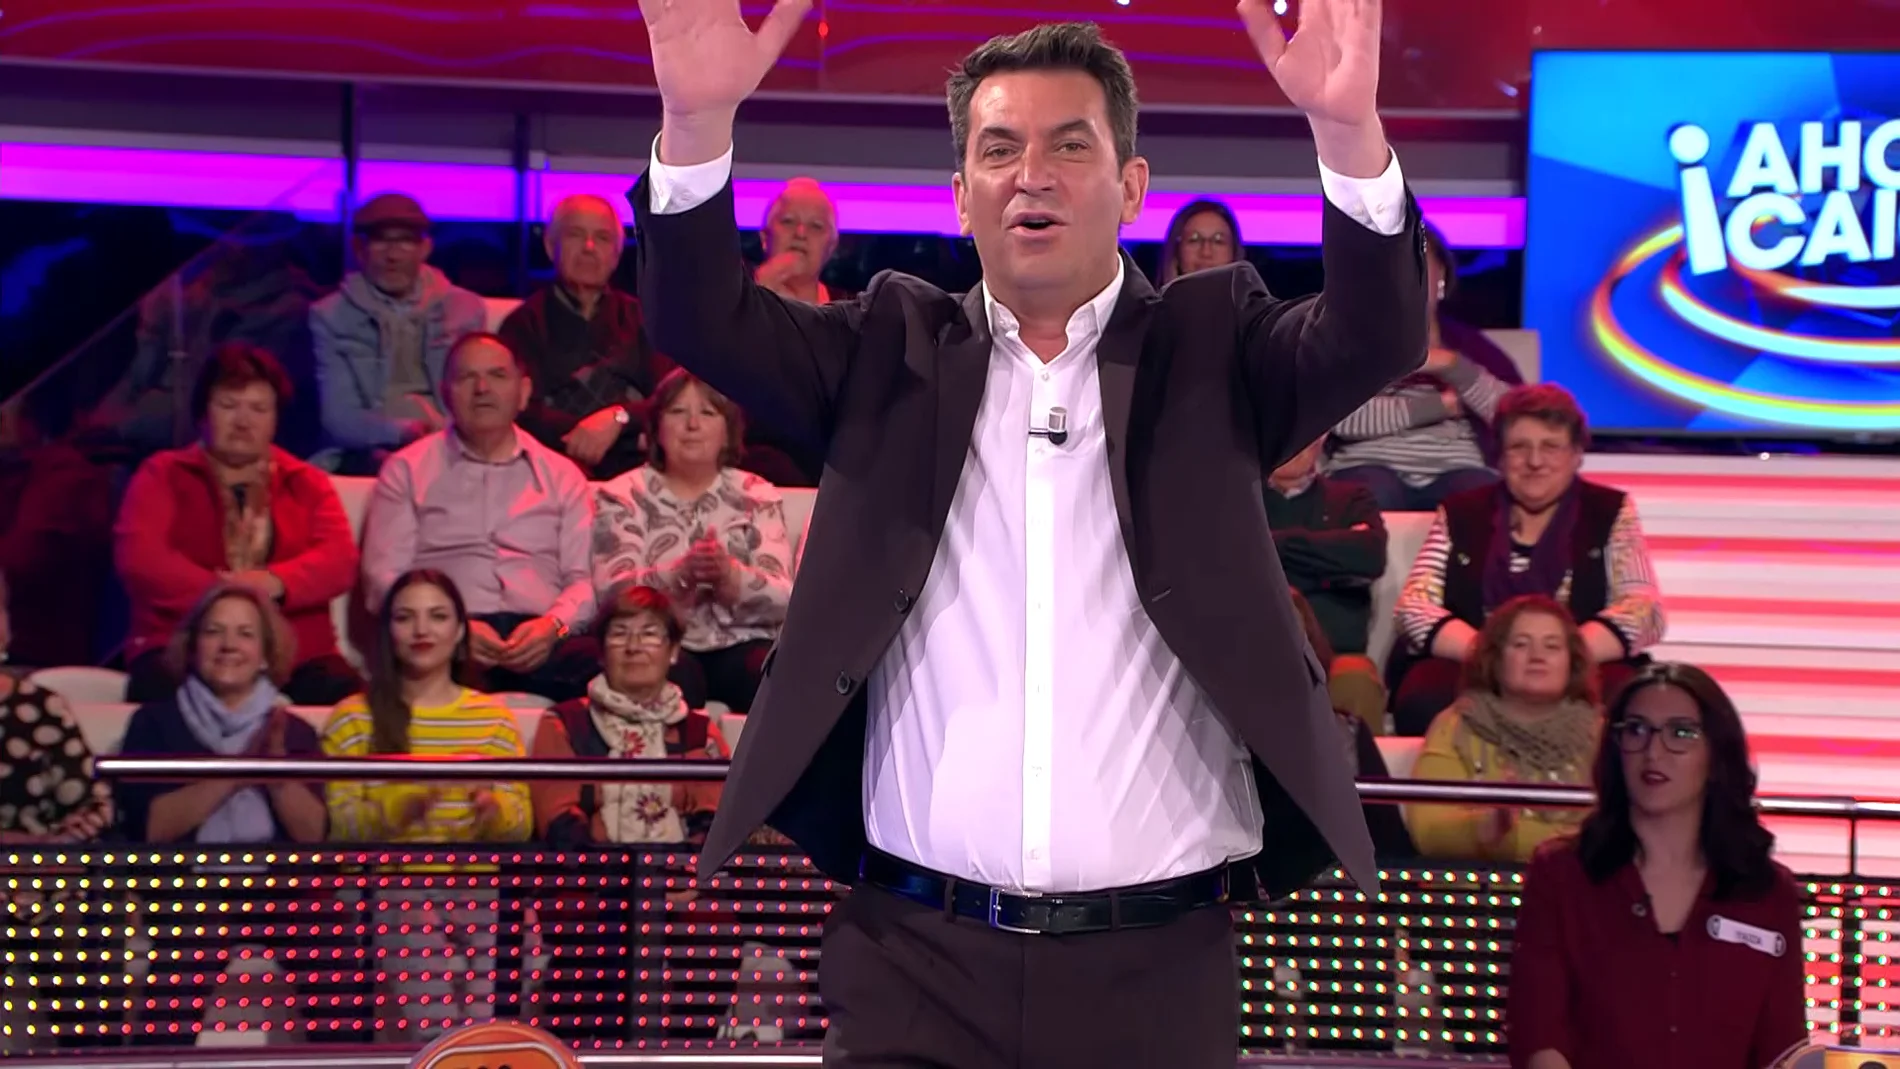 Arturo Valls manda un saludo a su homónimo italiano en '¡Ahora caigo!'